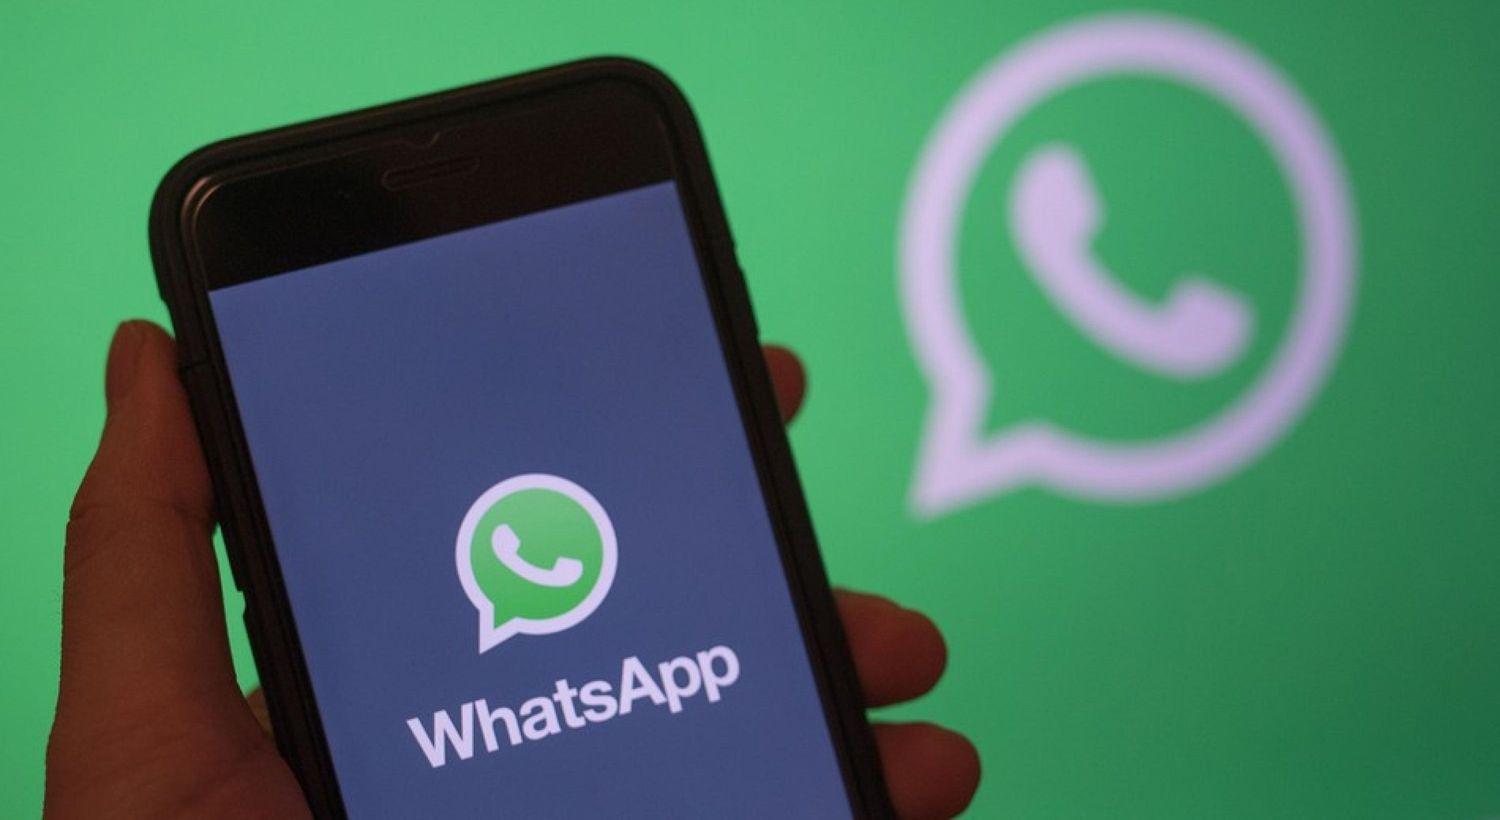 Cayoacute WhatsApp en casi todo el mundo- no permite enviar ni recibir mensajes